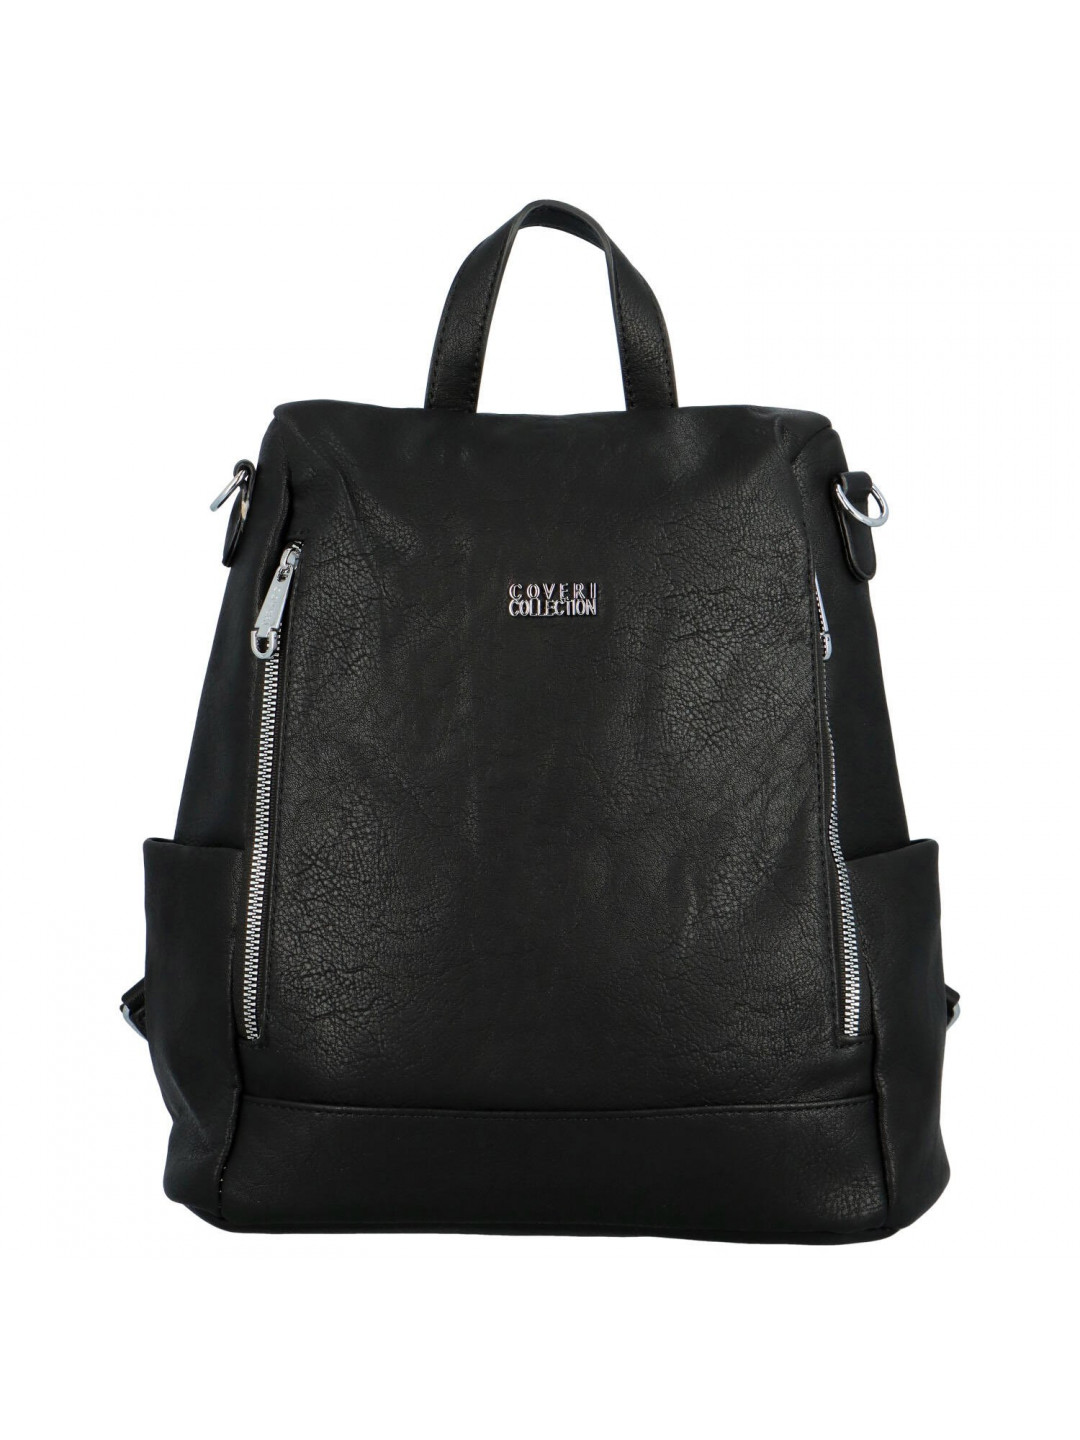 Stylový dámský koženkový kabelko batoh Trinida černý